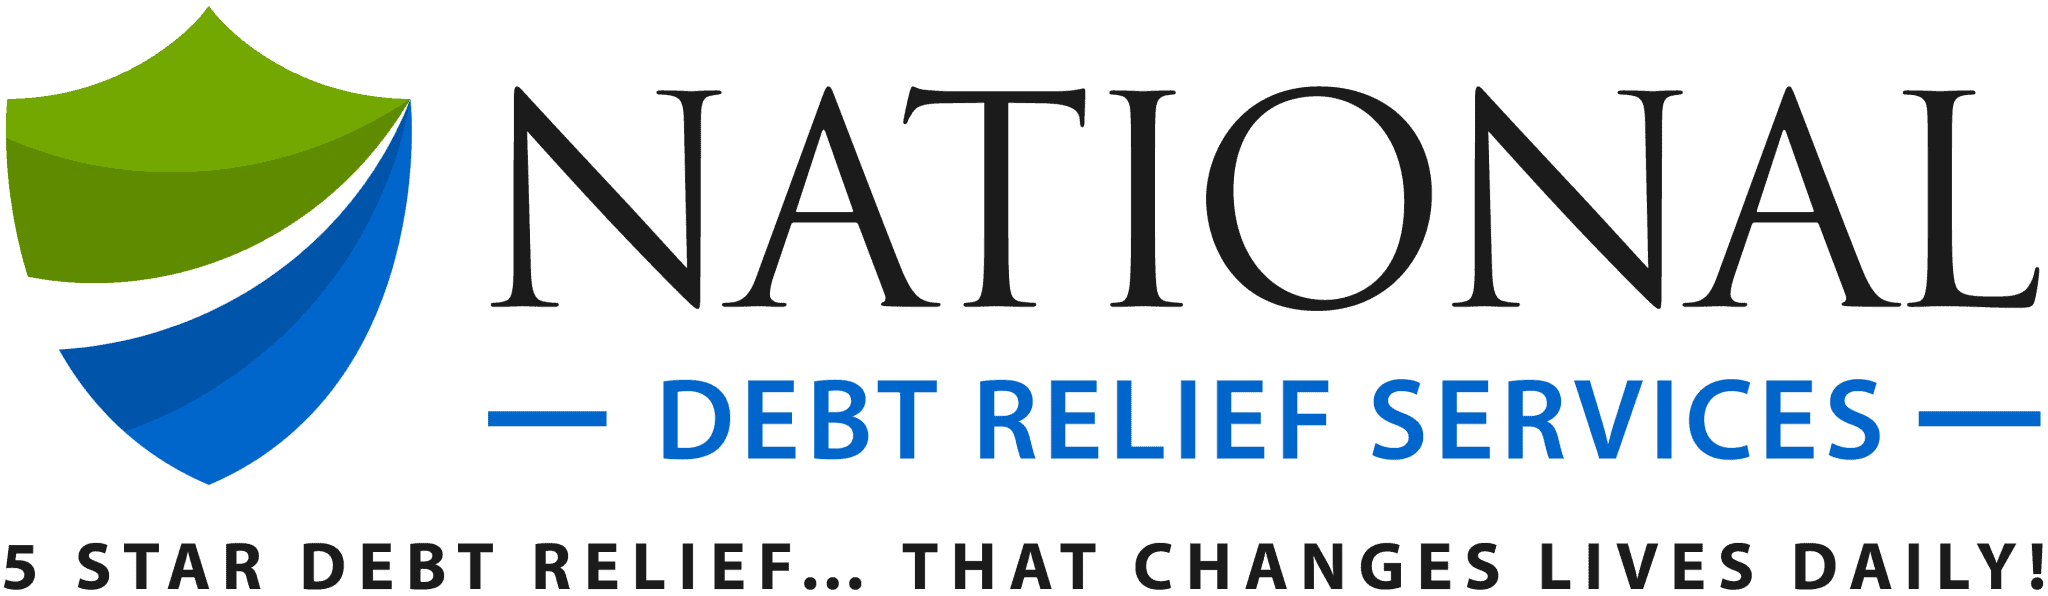 freedom debt relief vs national debt relief